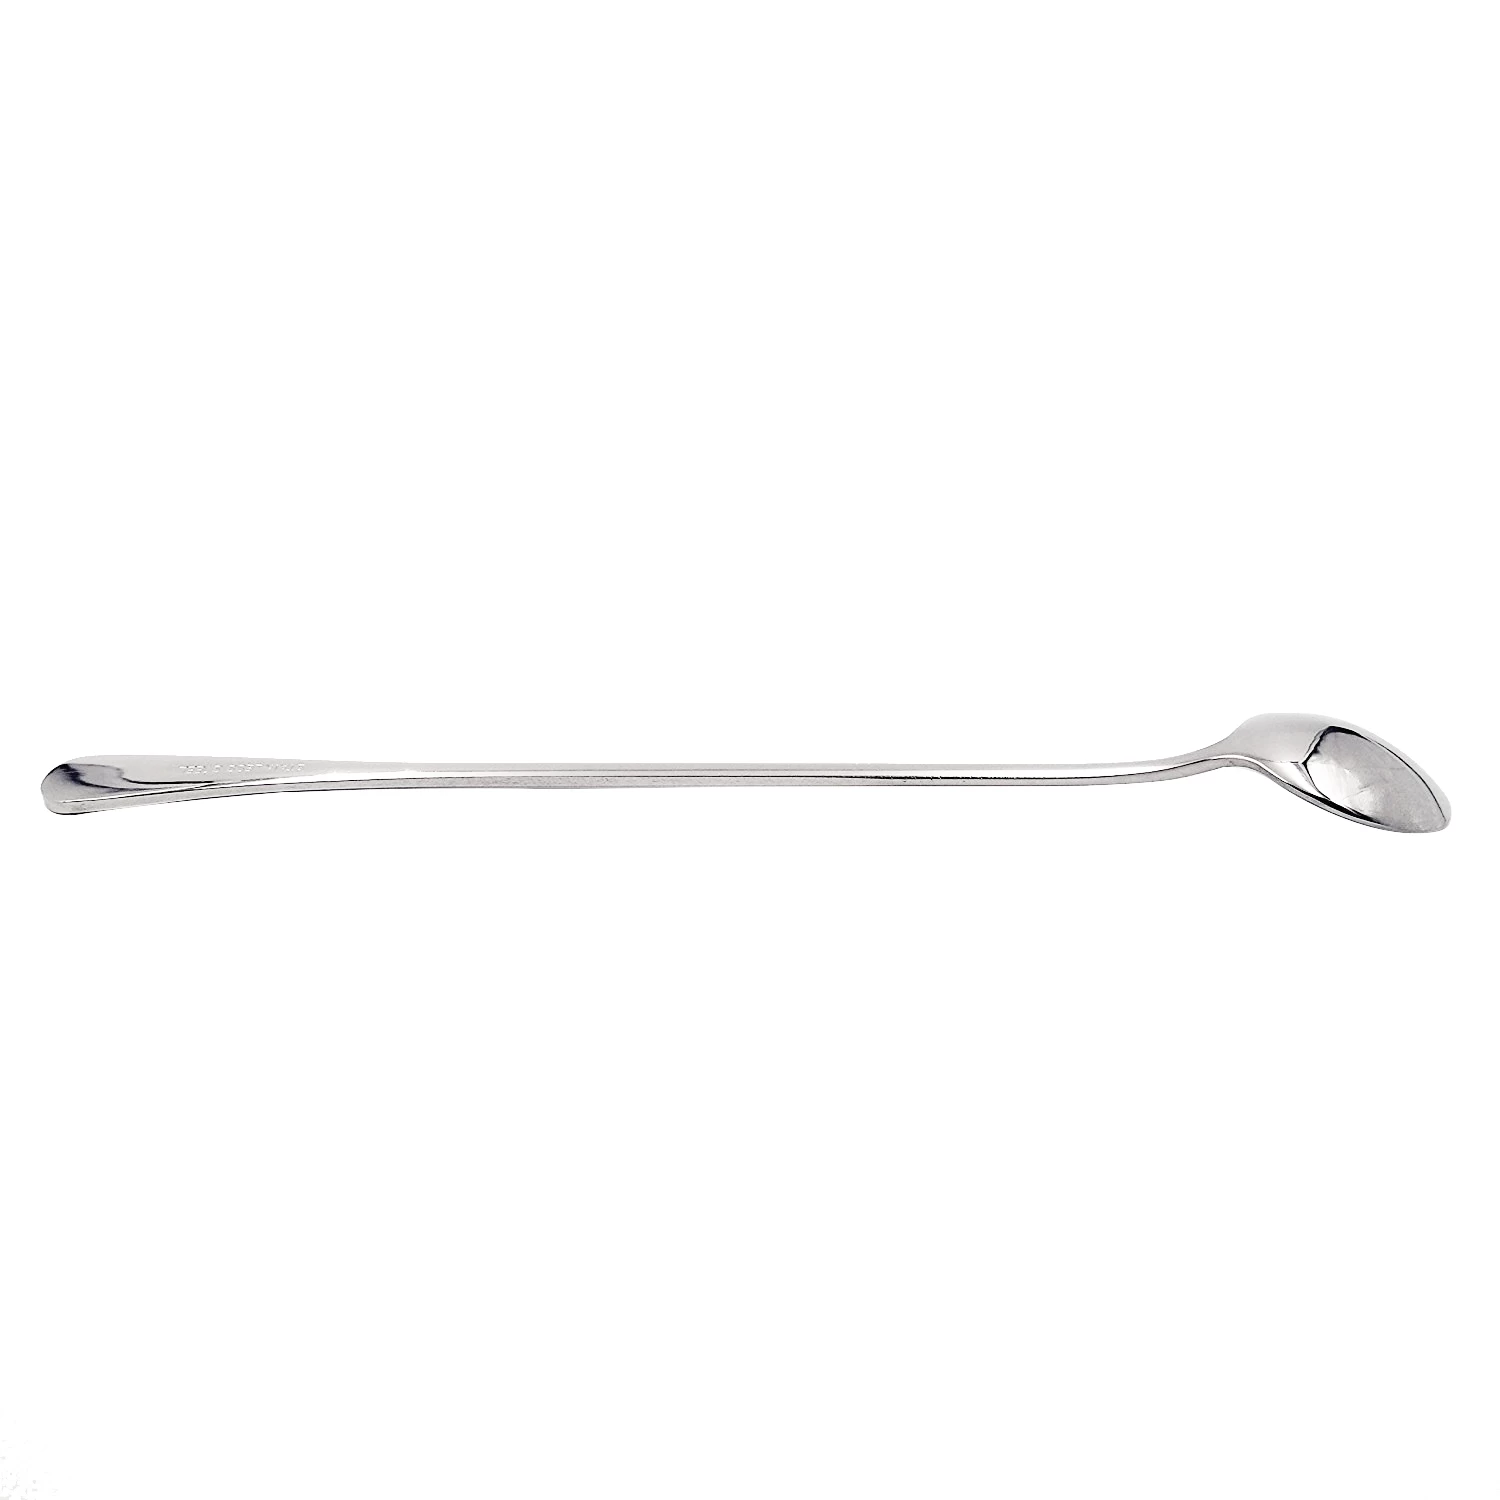 Deft DesignStainless Steel  Long Handle Iced Tea Spoon Coffee Scoop Set of 4